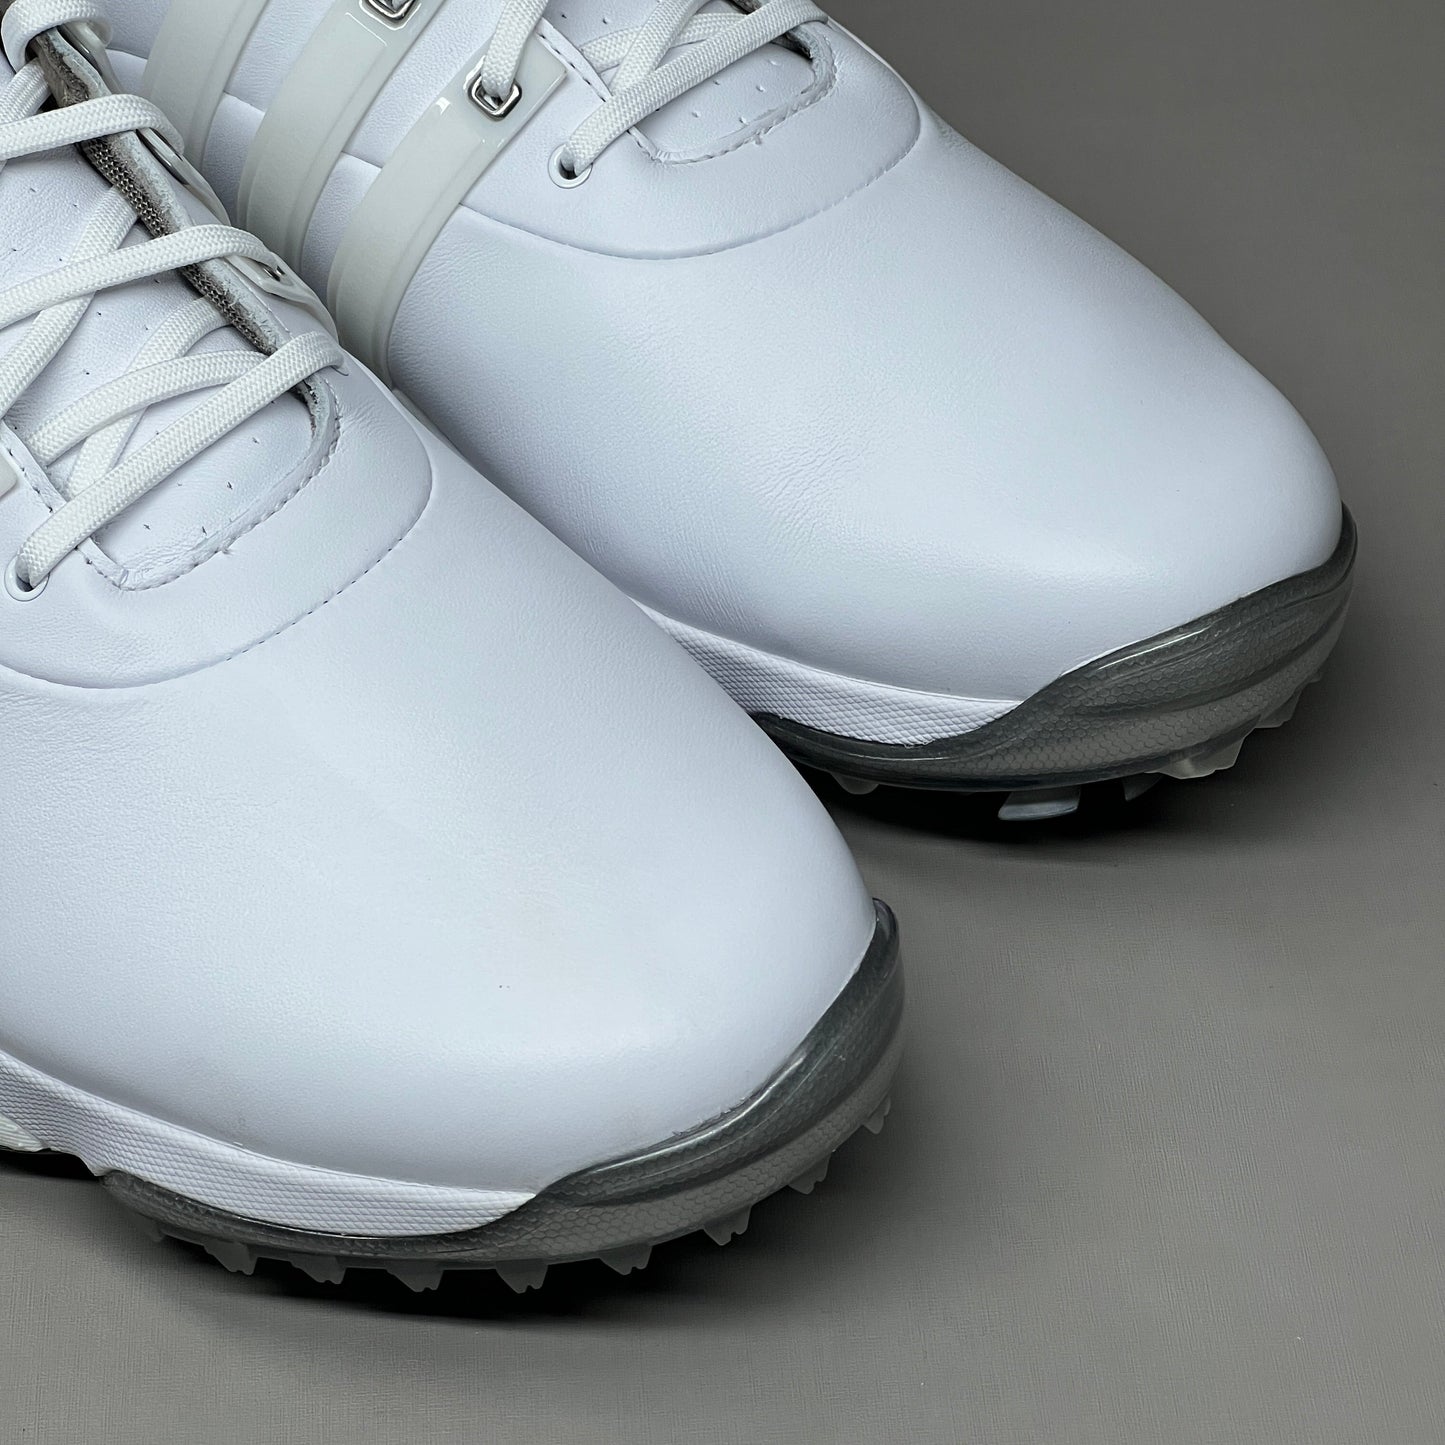 ADIDAS Golf Shoes TOUR360 22 Leather Men's Sz 7 White / Silver GV7245 (New)